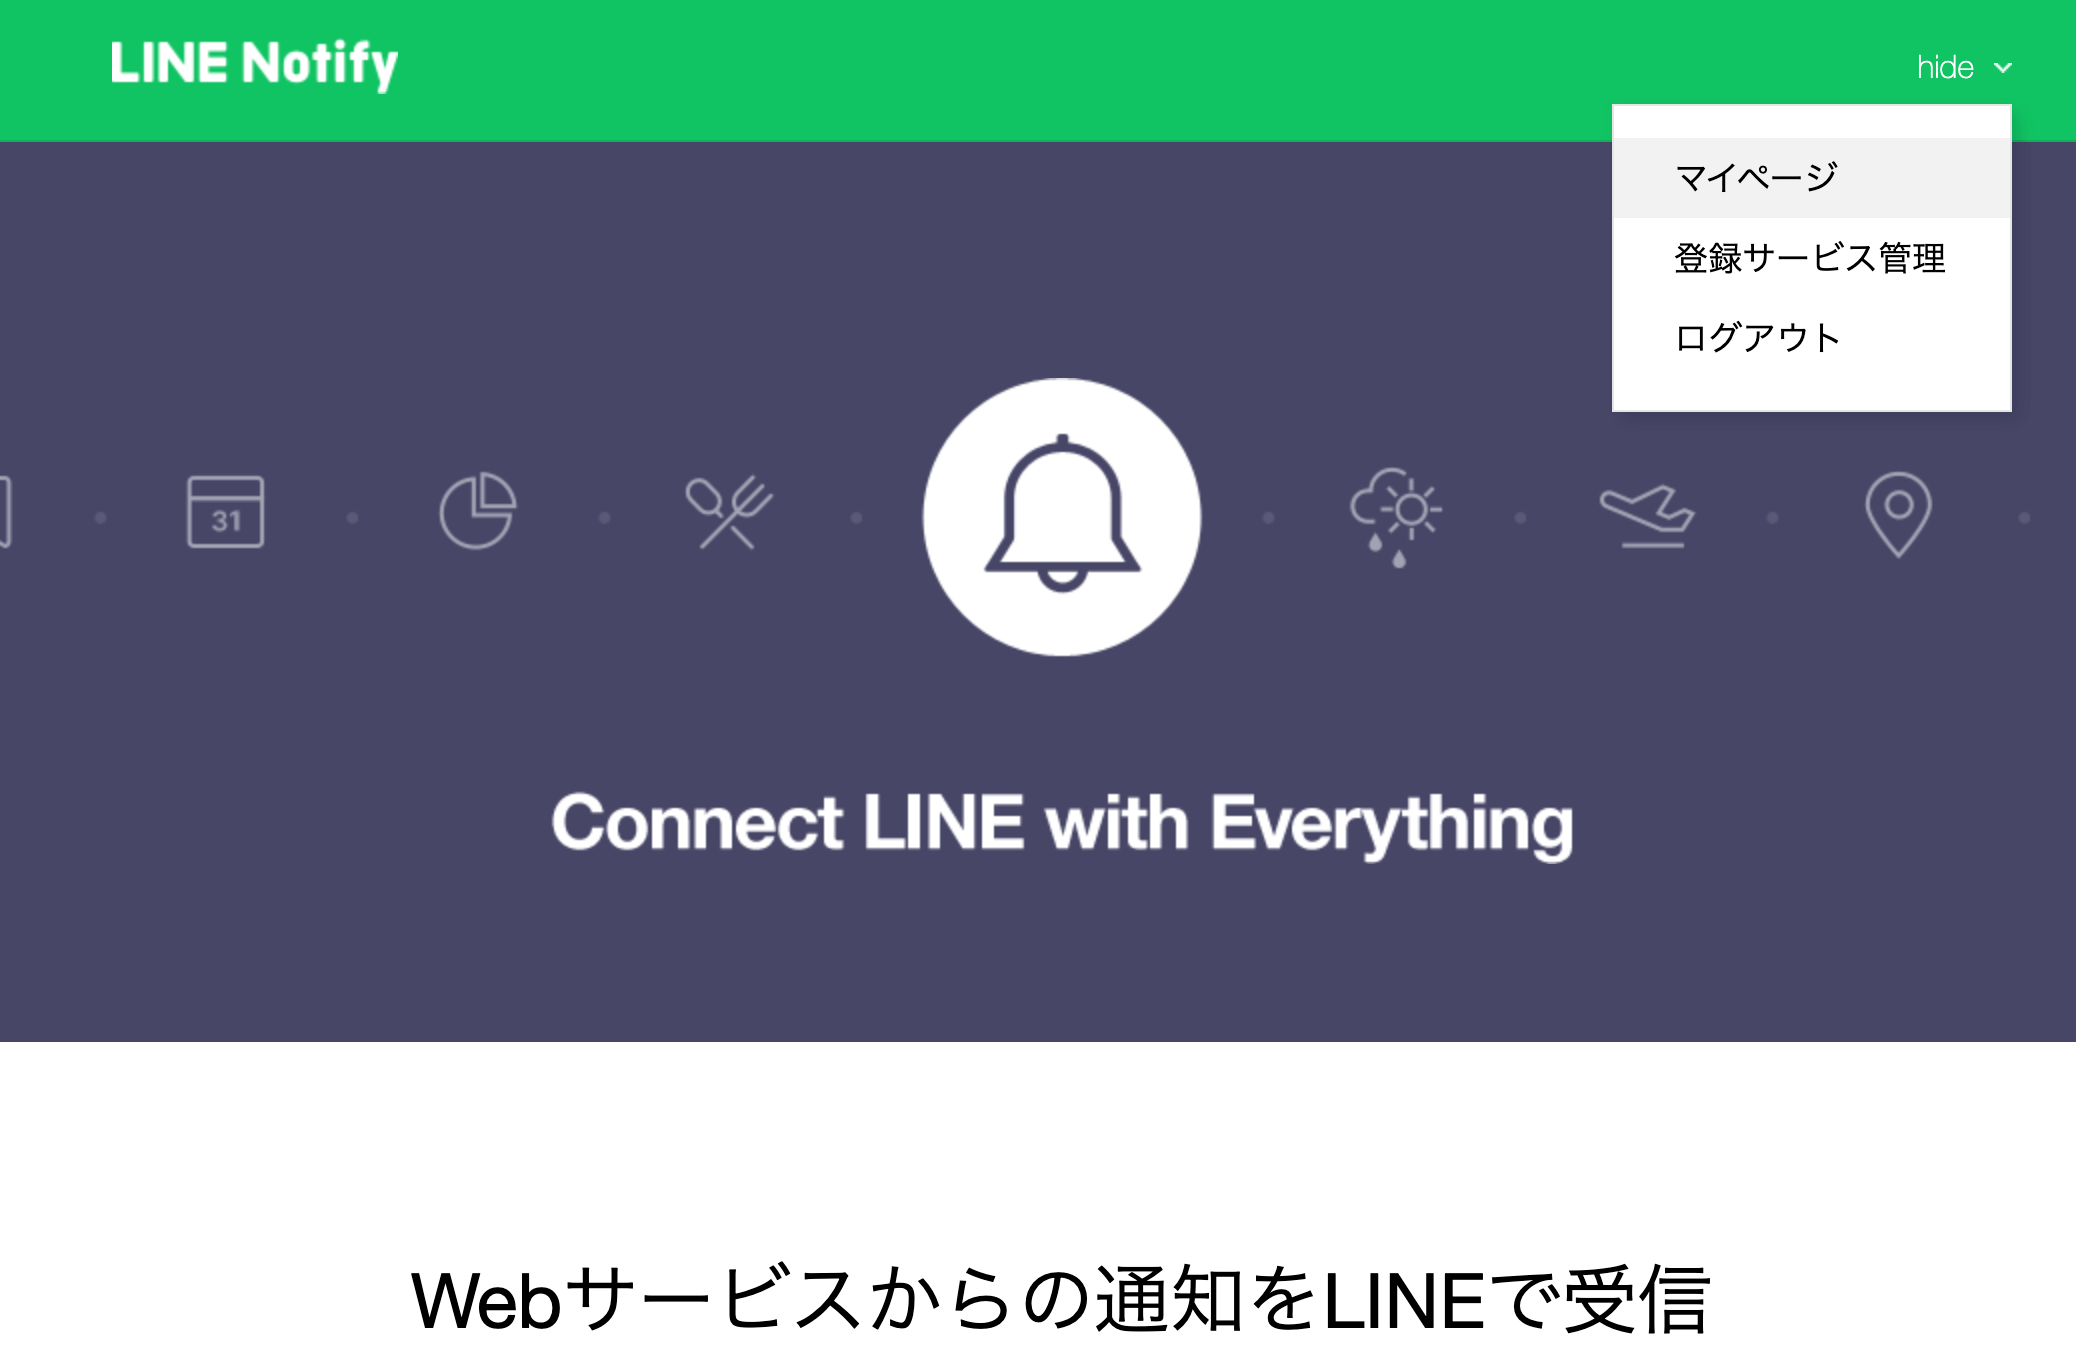 LINE Notifyのマイページに移動